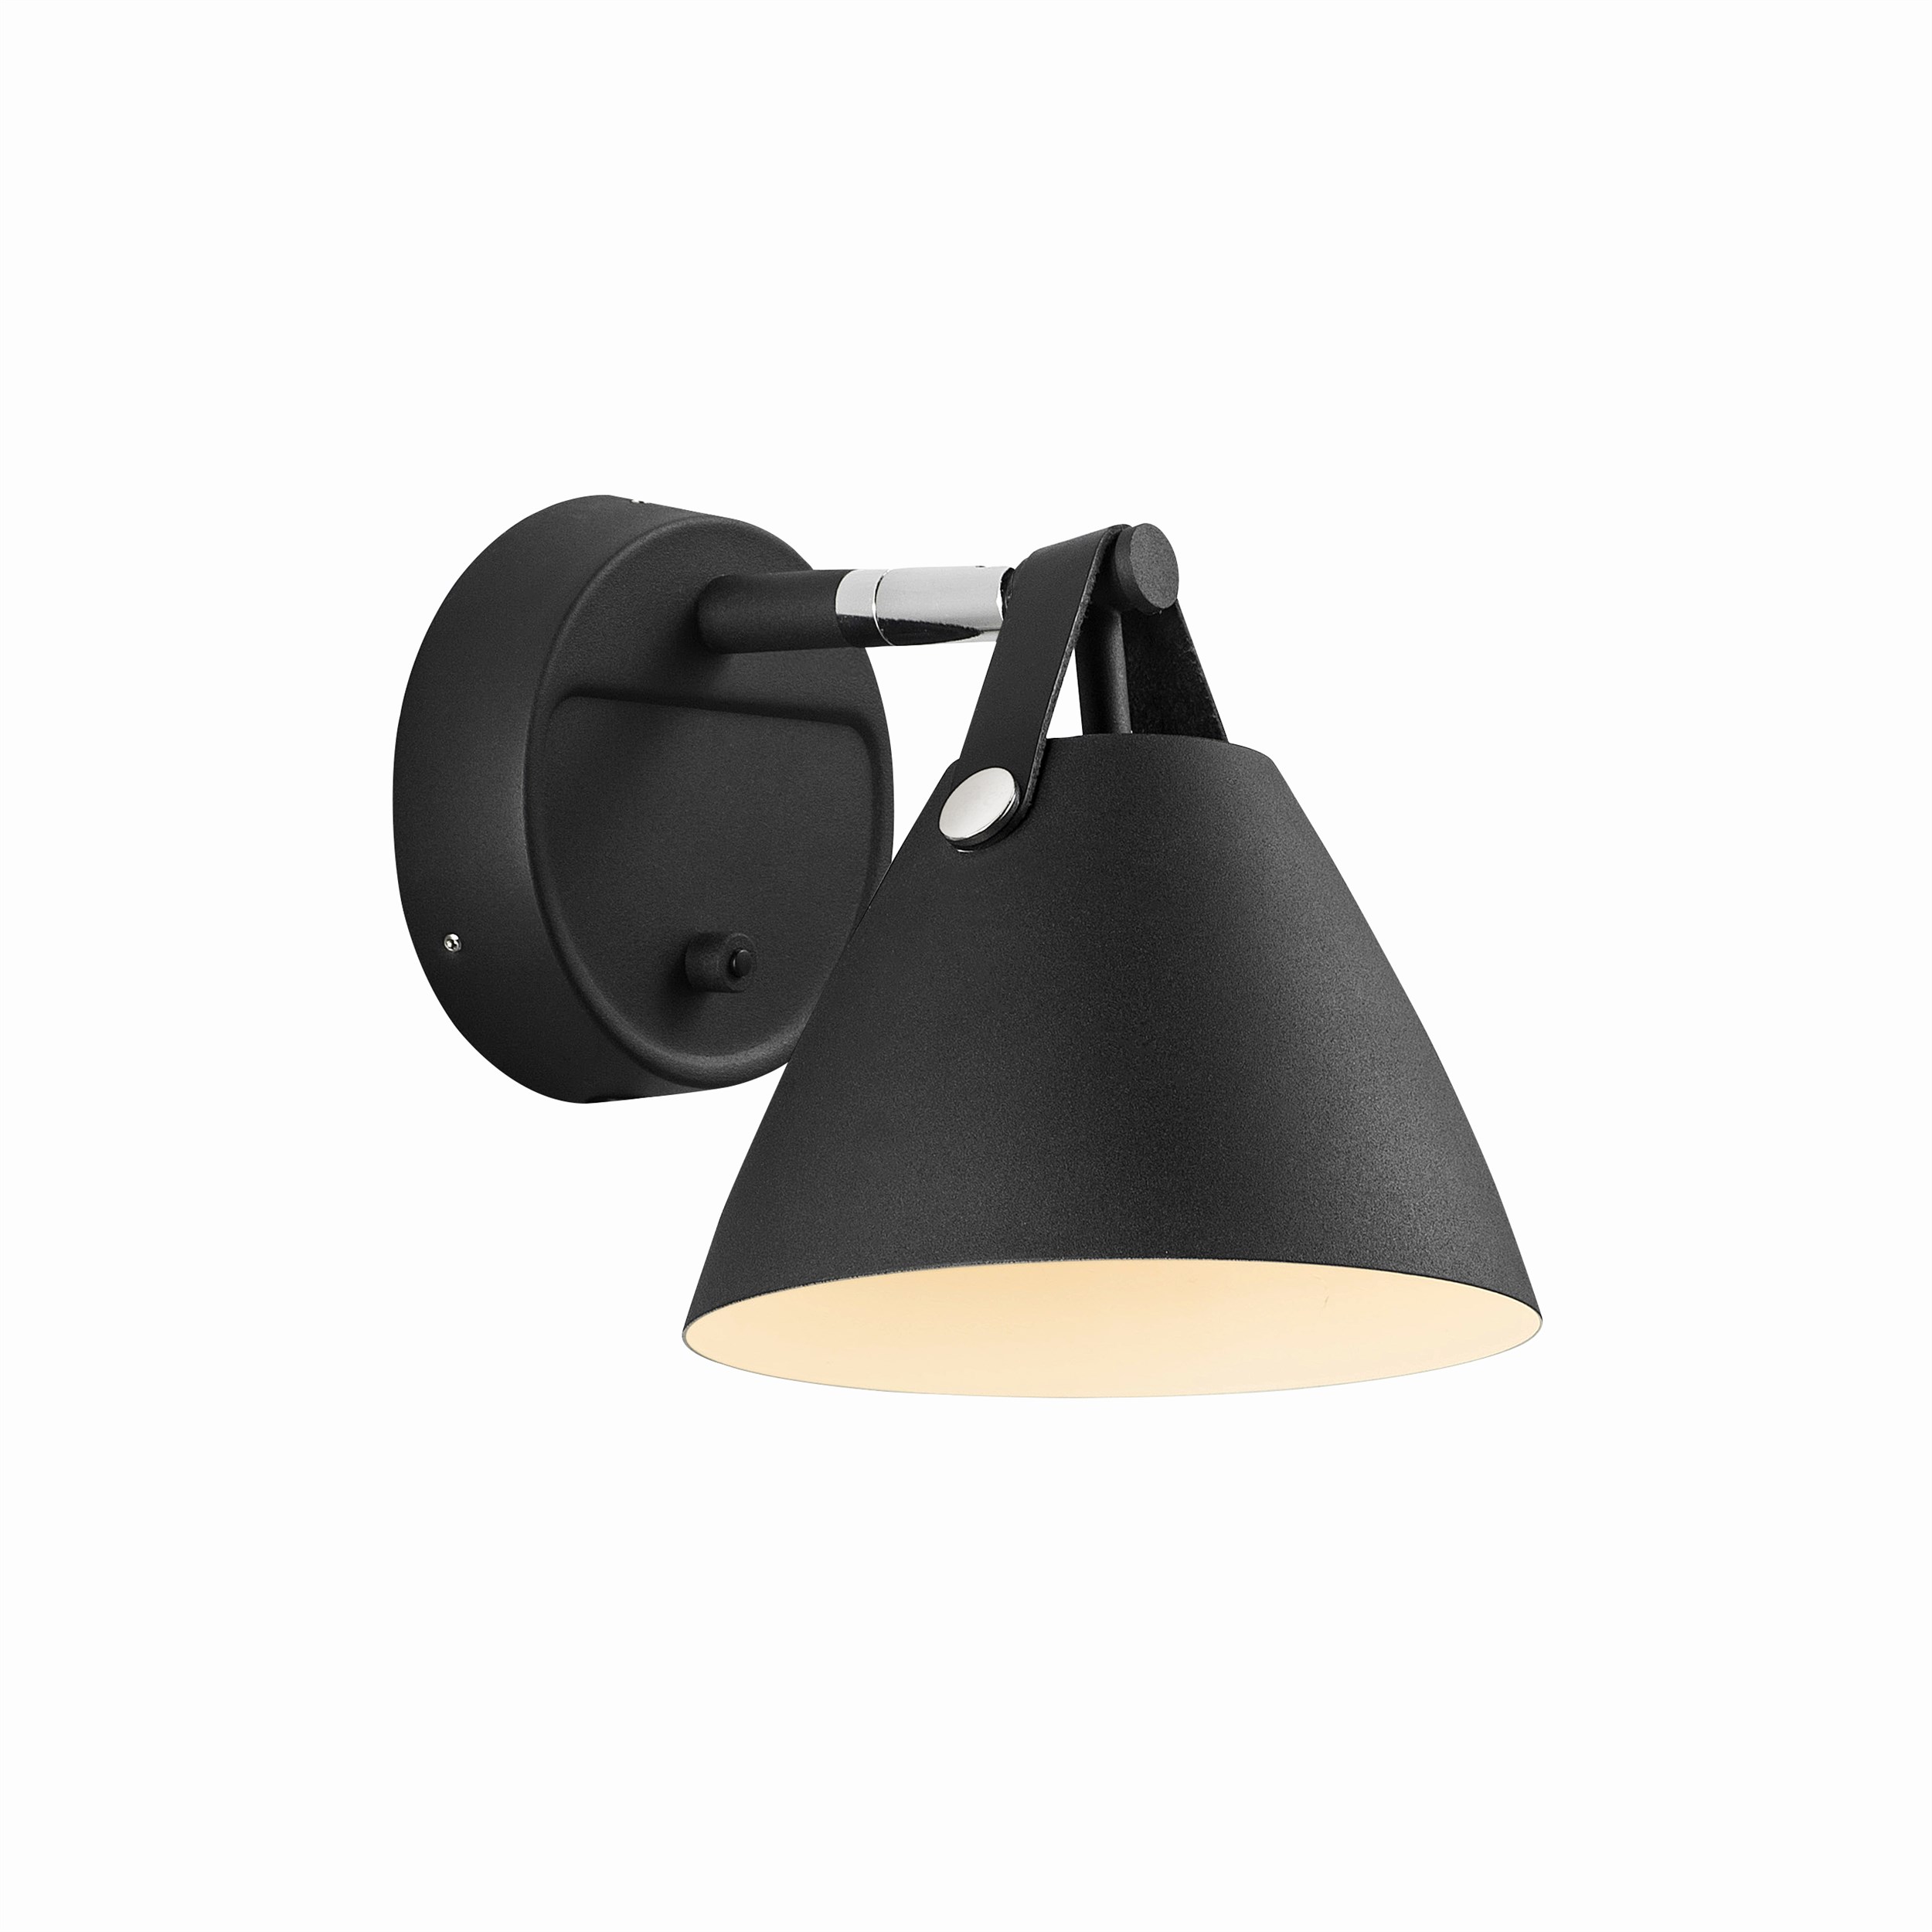 STRAP Væglampe 21 x 17 cm - Sort metalskærm, sort læderstrop og sort gummiledning